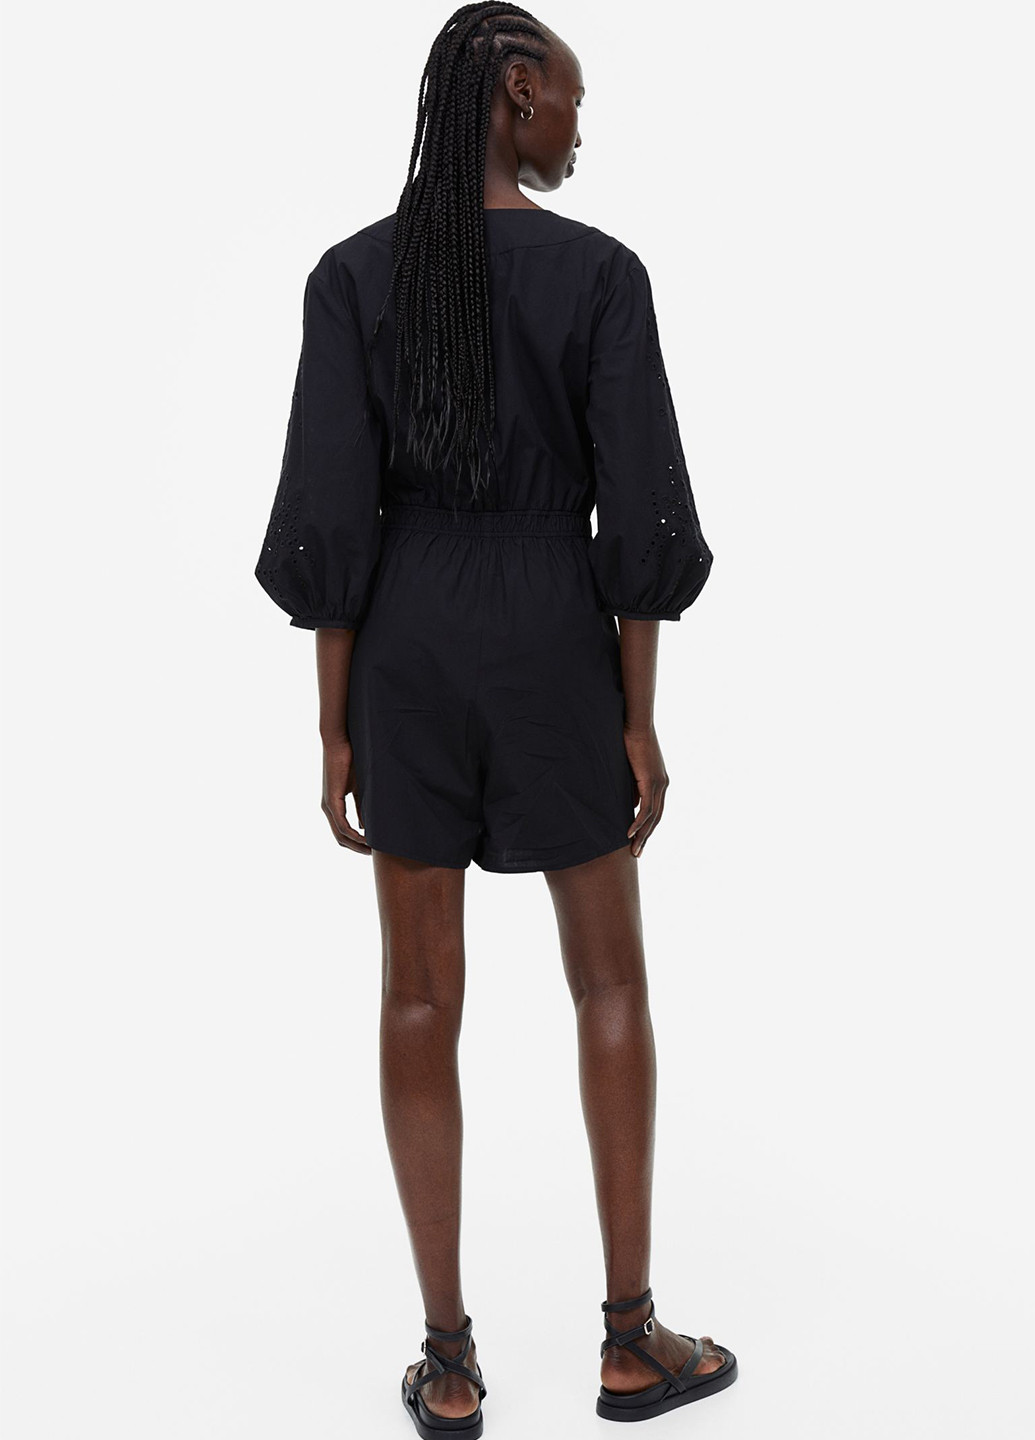 Комбинезон H&M комбинезон-шорты однотонный чёрный кэжуал хлопок